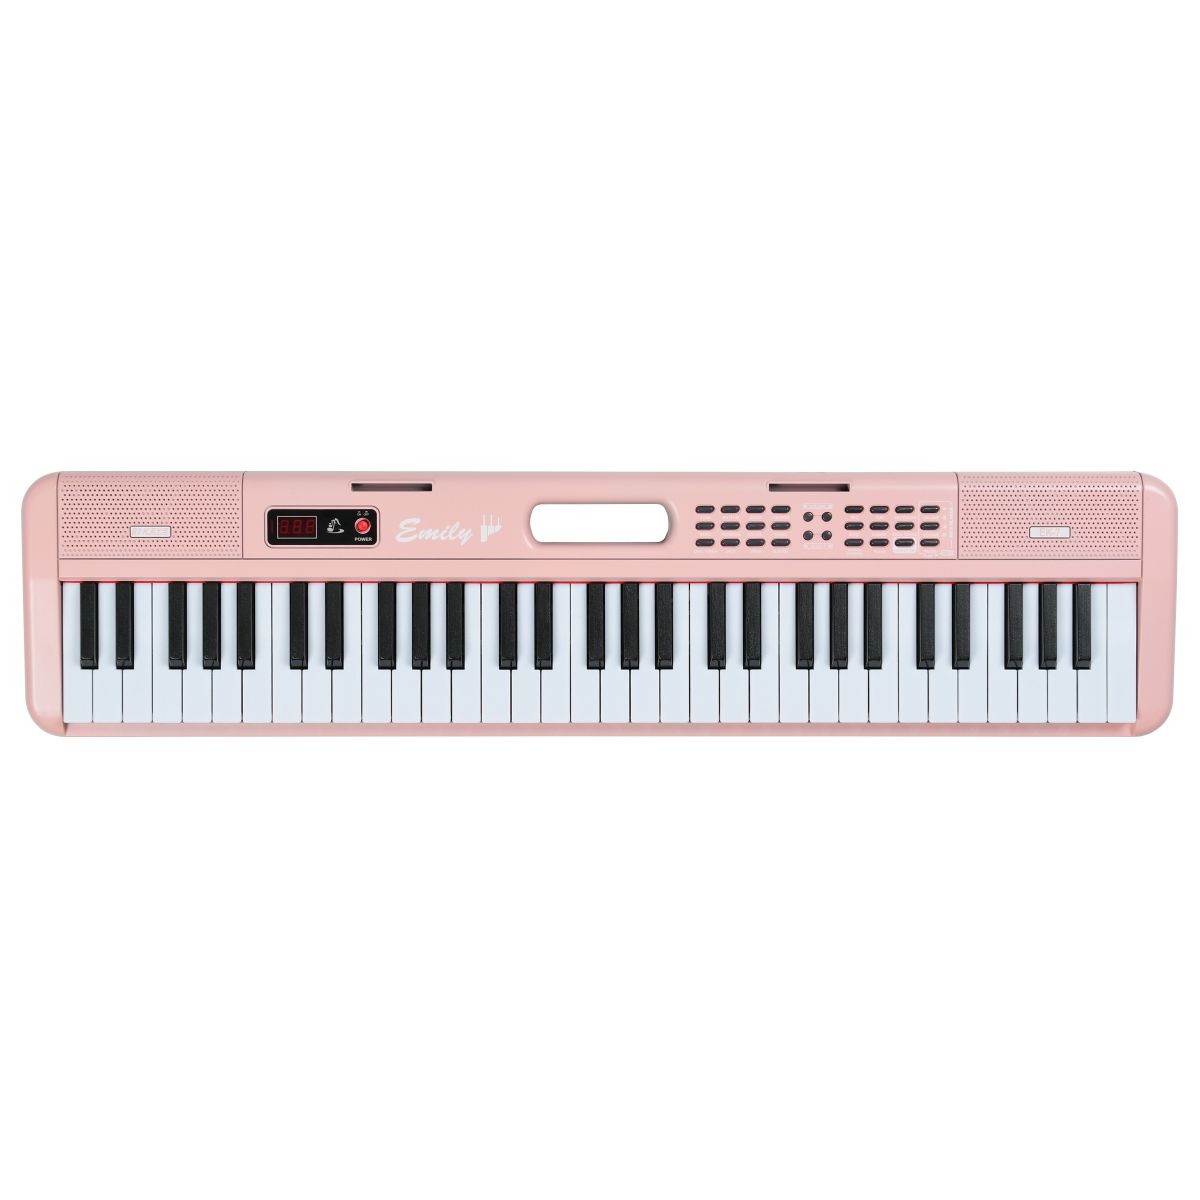 Портативный синтезатор EMILY PIANO EK-7 PK, 61 клавиша